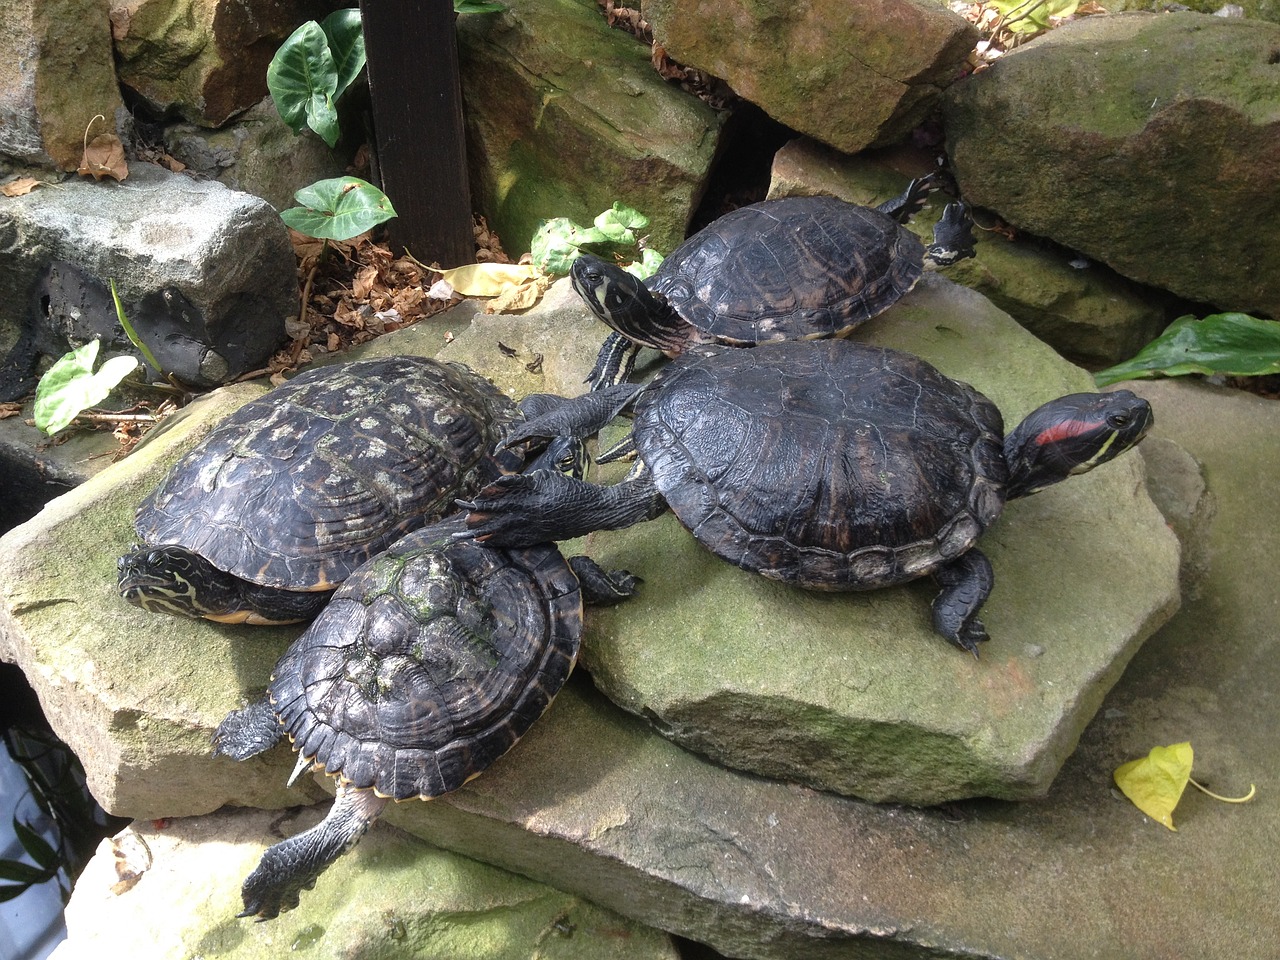 terrapins turtles sliders free photo